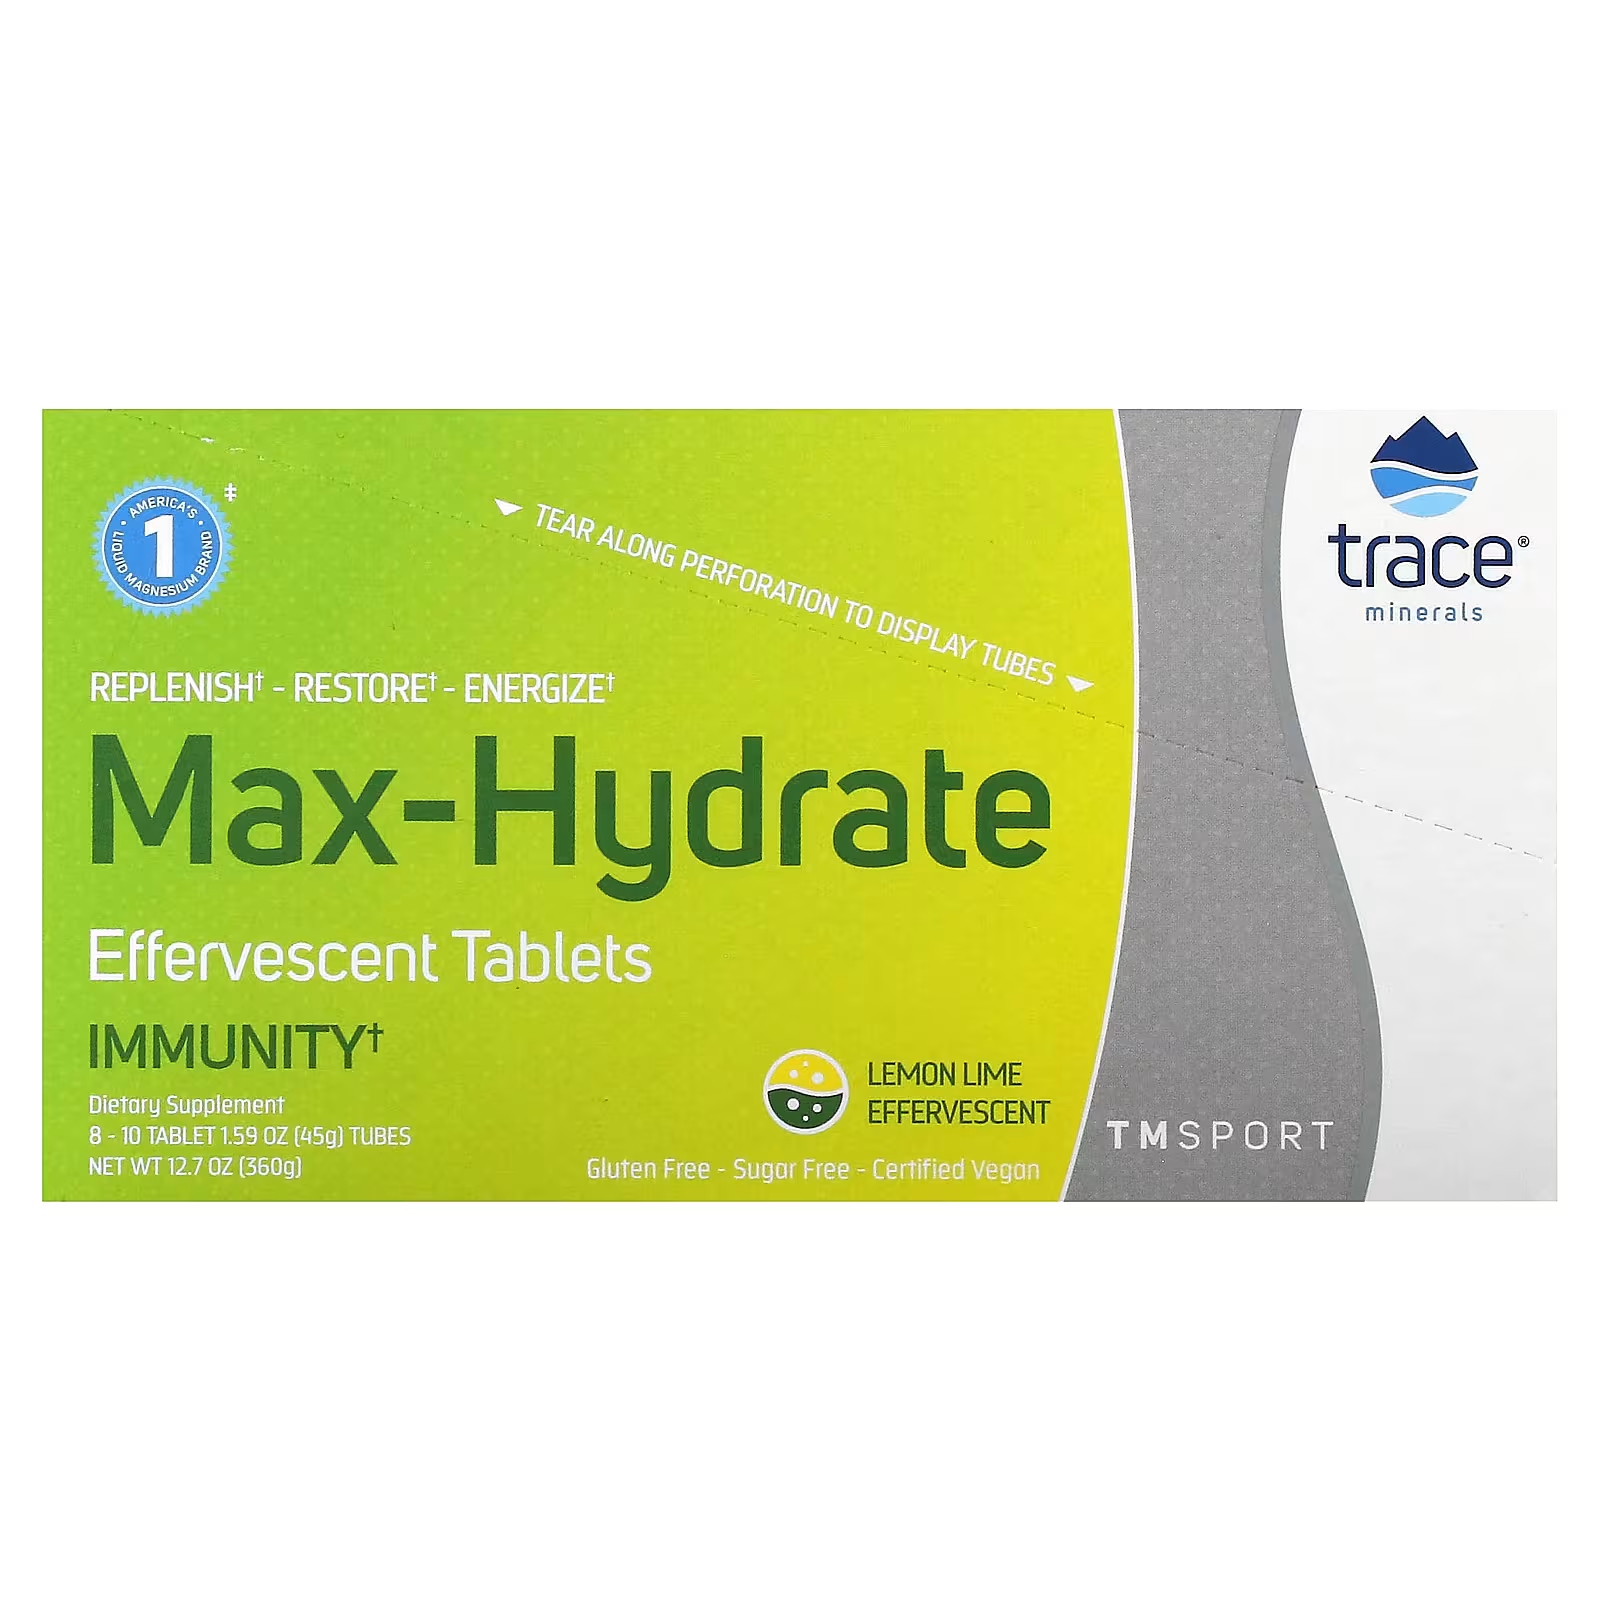 Шипучие таблетки Trace Minerals TM Sport Max-Hydrate Immunity лимон-лайм шипучие таблетки trace minerals tm sport max hydrate endurance цитрус 8 тюбиков по 10 таблеток